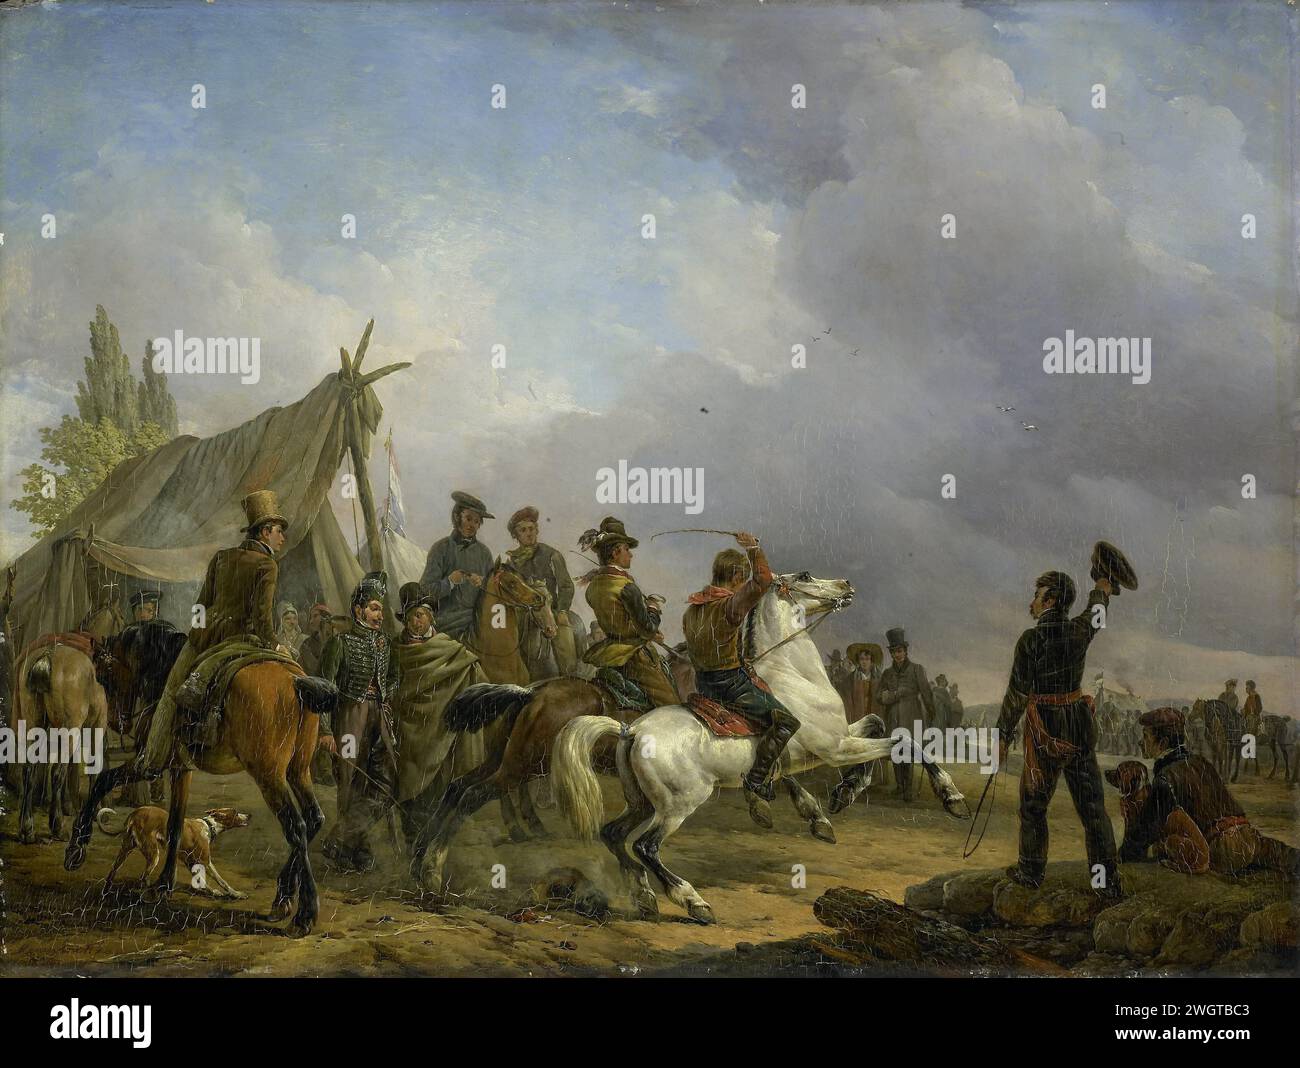 La course de chevaux, Joseph Moerenhout, 1829 peignant le trot dur. Le début d’une compétition de course entre deux chevaux dans un camp militaire, surveillée par des soldats et des civils. panneau. camp de peinture à l'huile (peinture) (militaire) avec des tentes. courses hippiques Banque D'Images